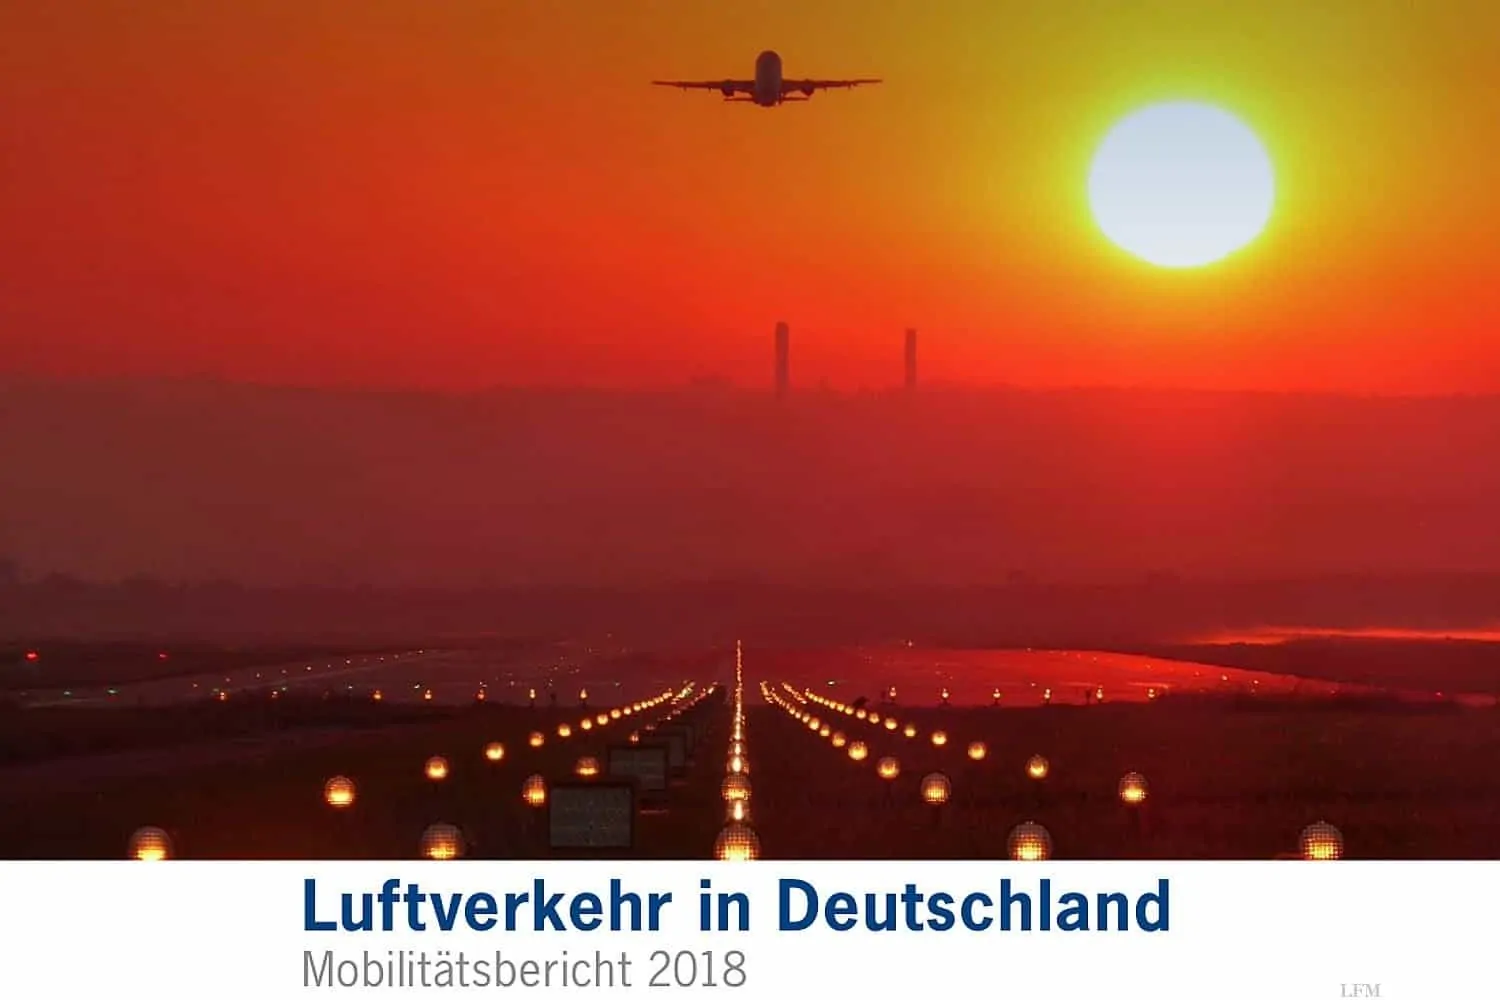 Luftverkehr in Deutschland: Mobilitätsbericht